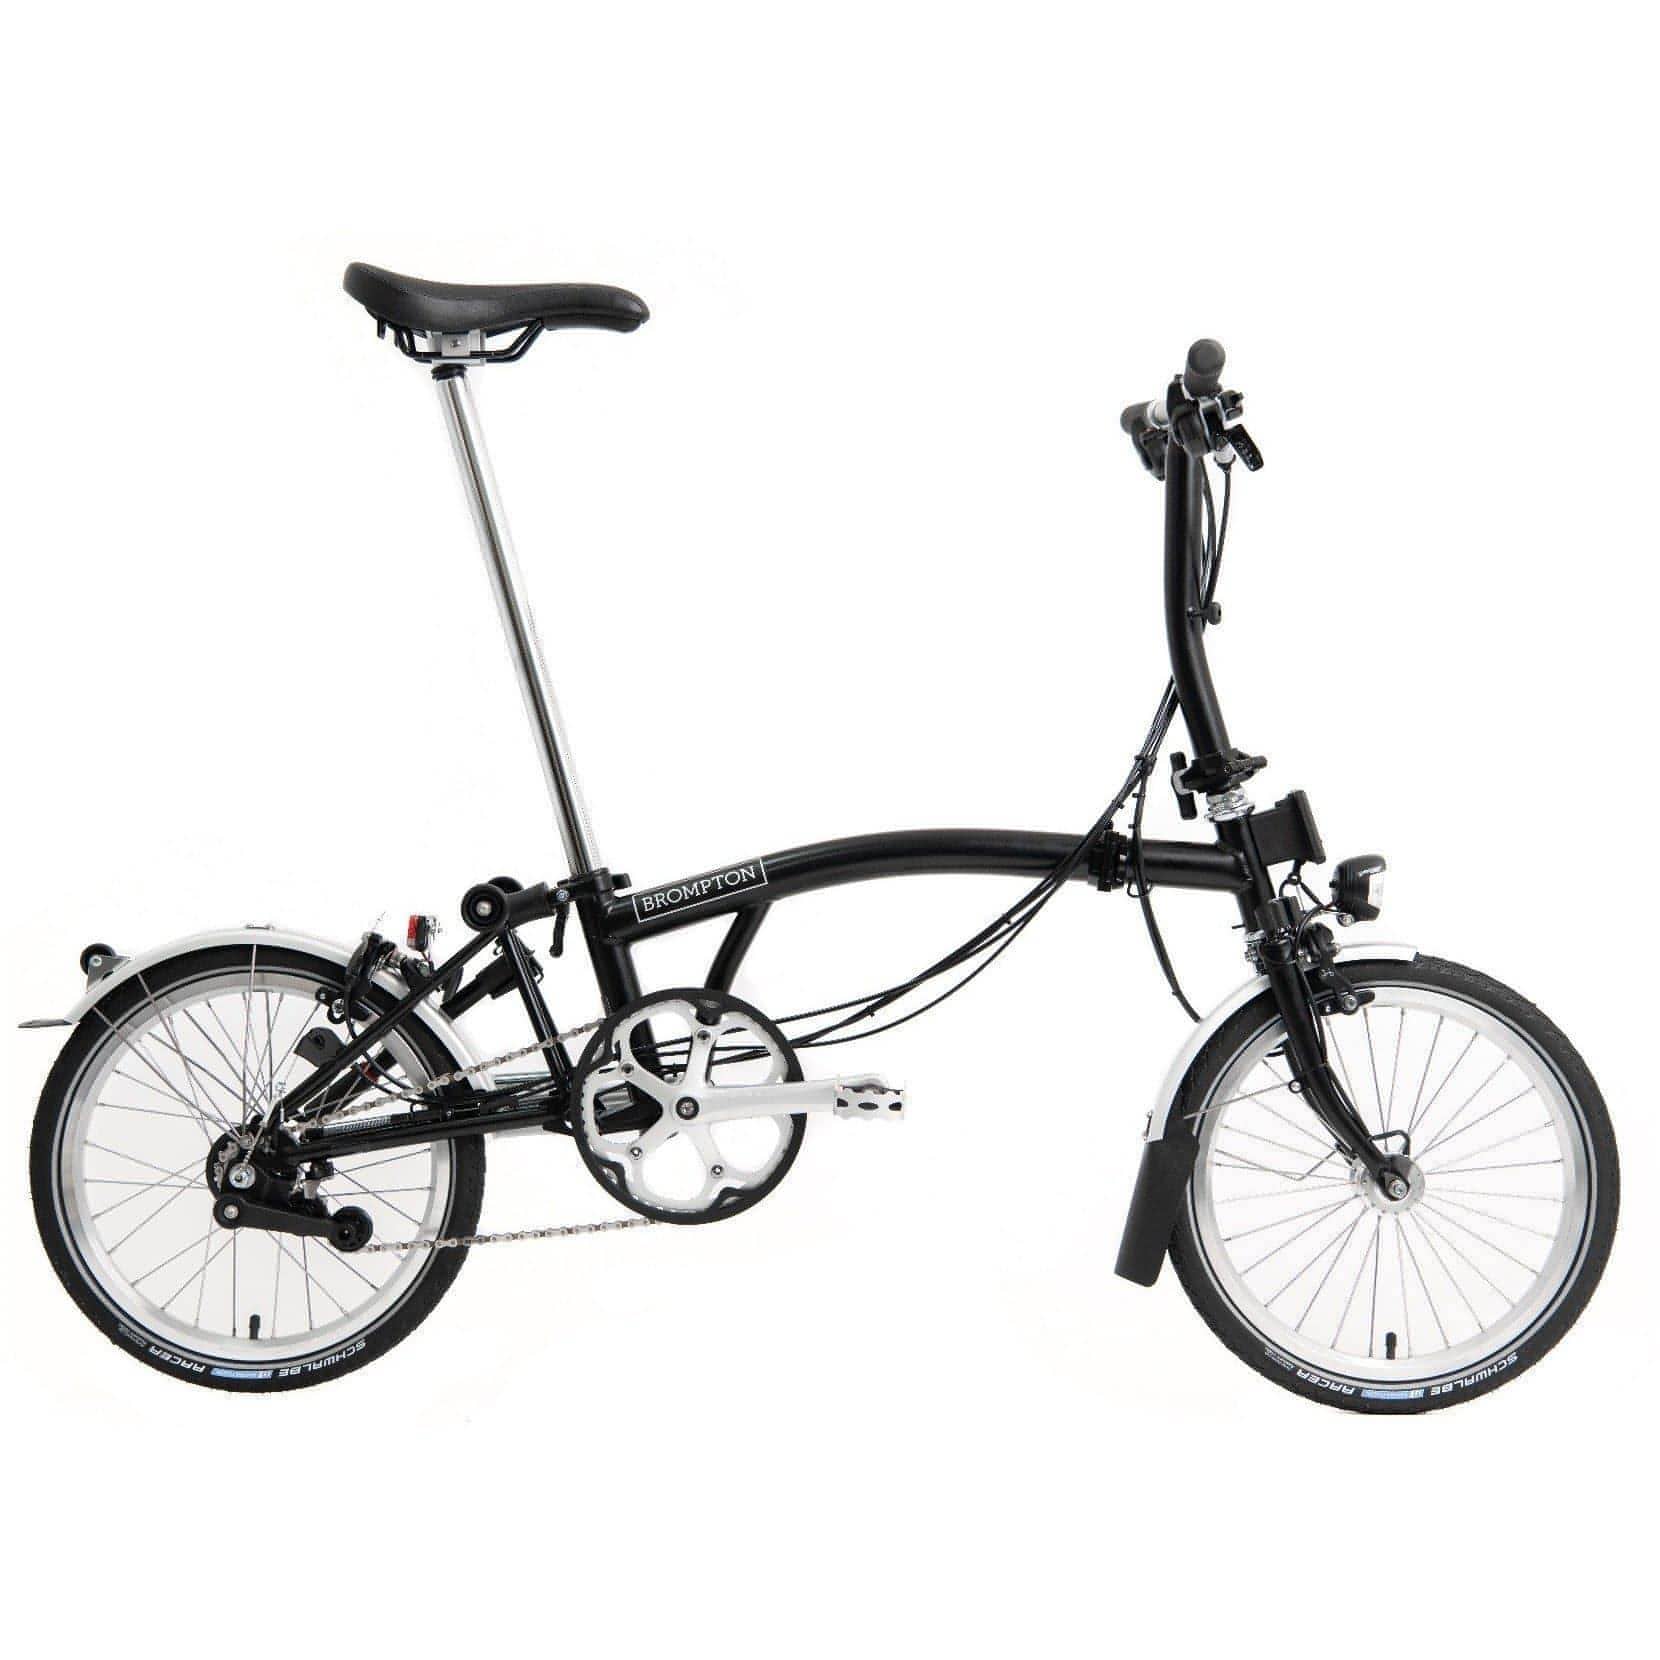 Brompton S6L Folding Bike 2021 - Black 5054977114746 - Start Fitness